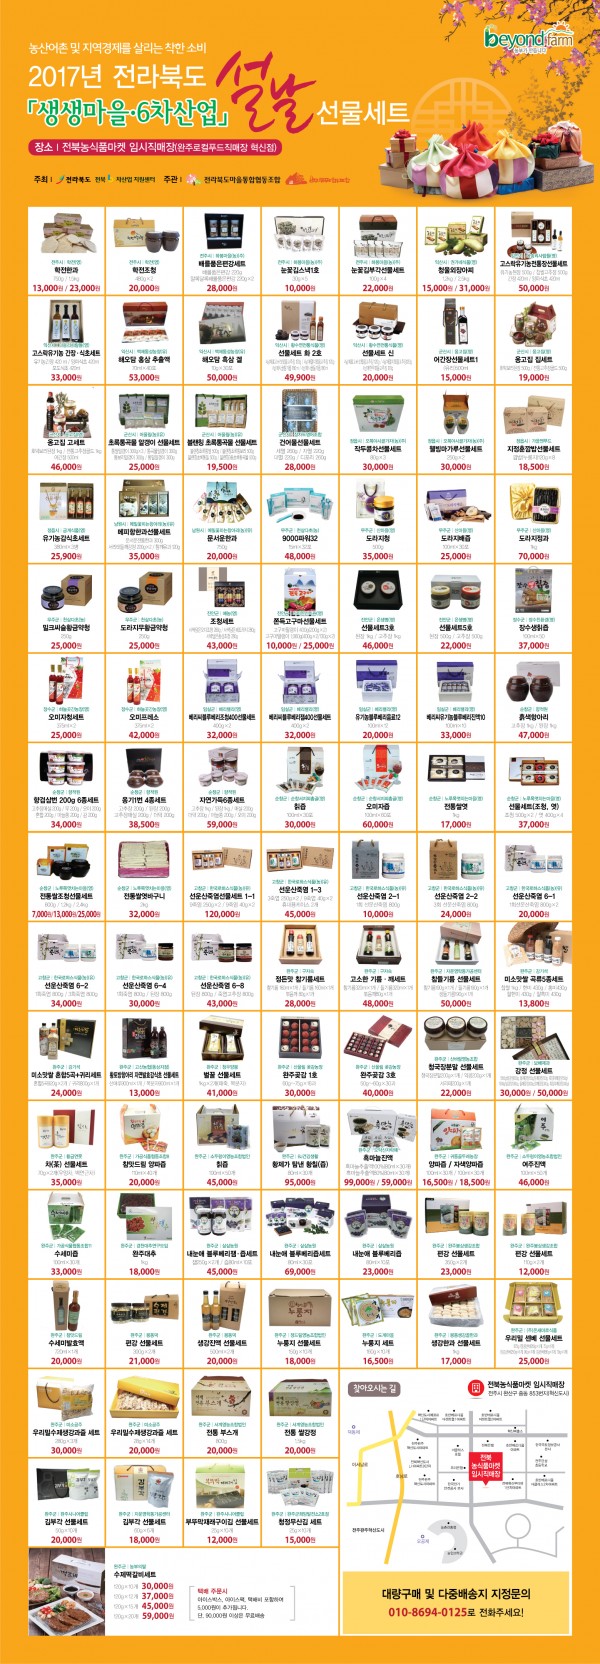 170123 설선물세트 판촉행사 전단지(전북농식품마켓)(전북도 공유자료).jpg